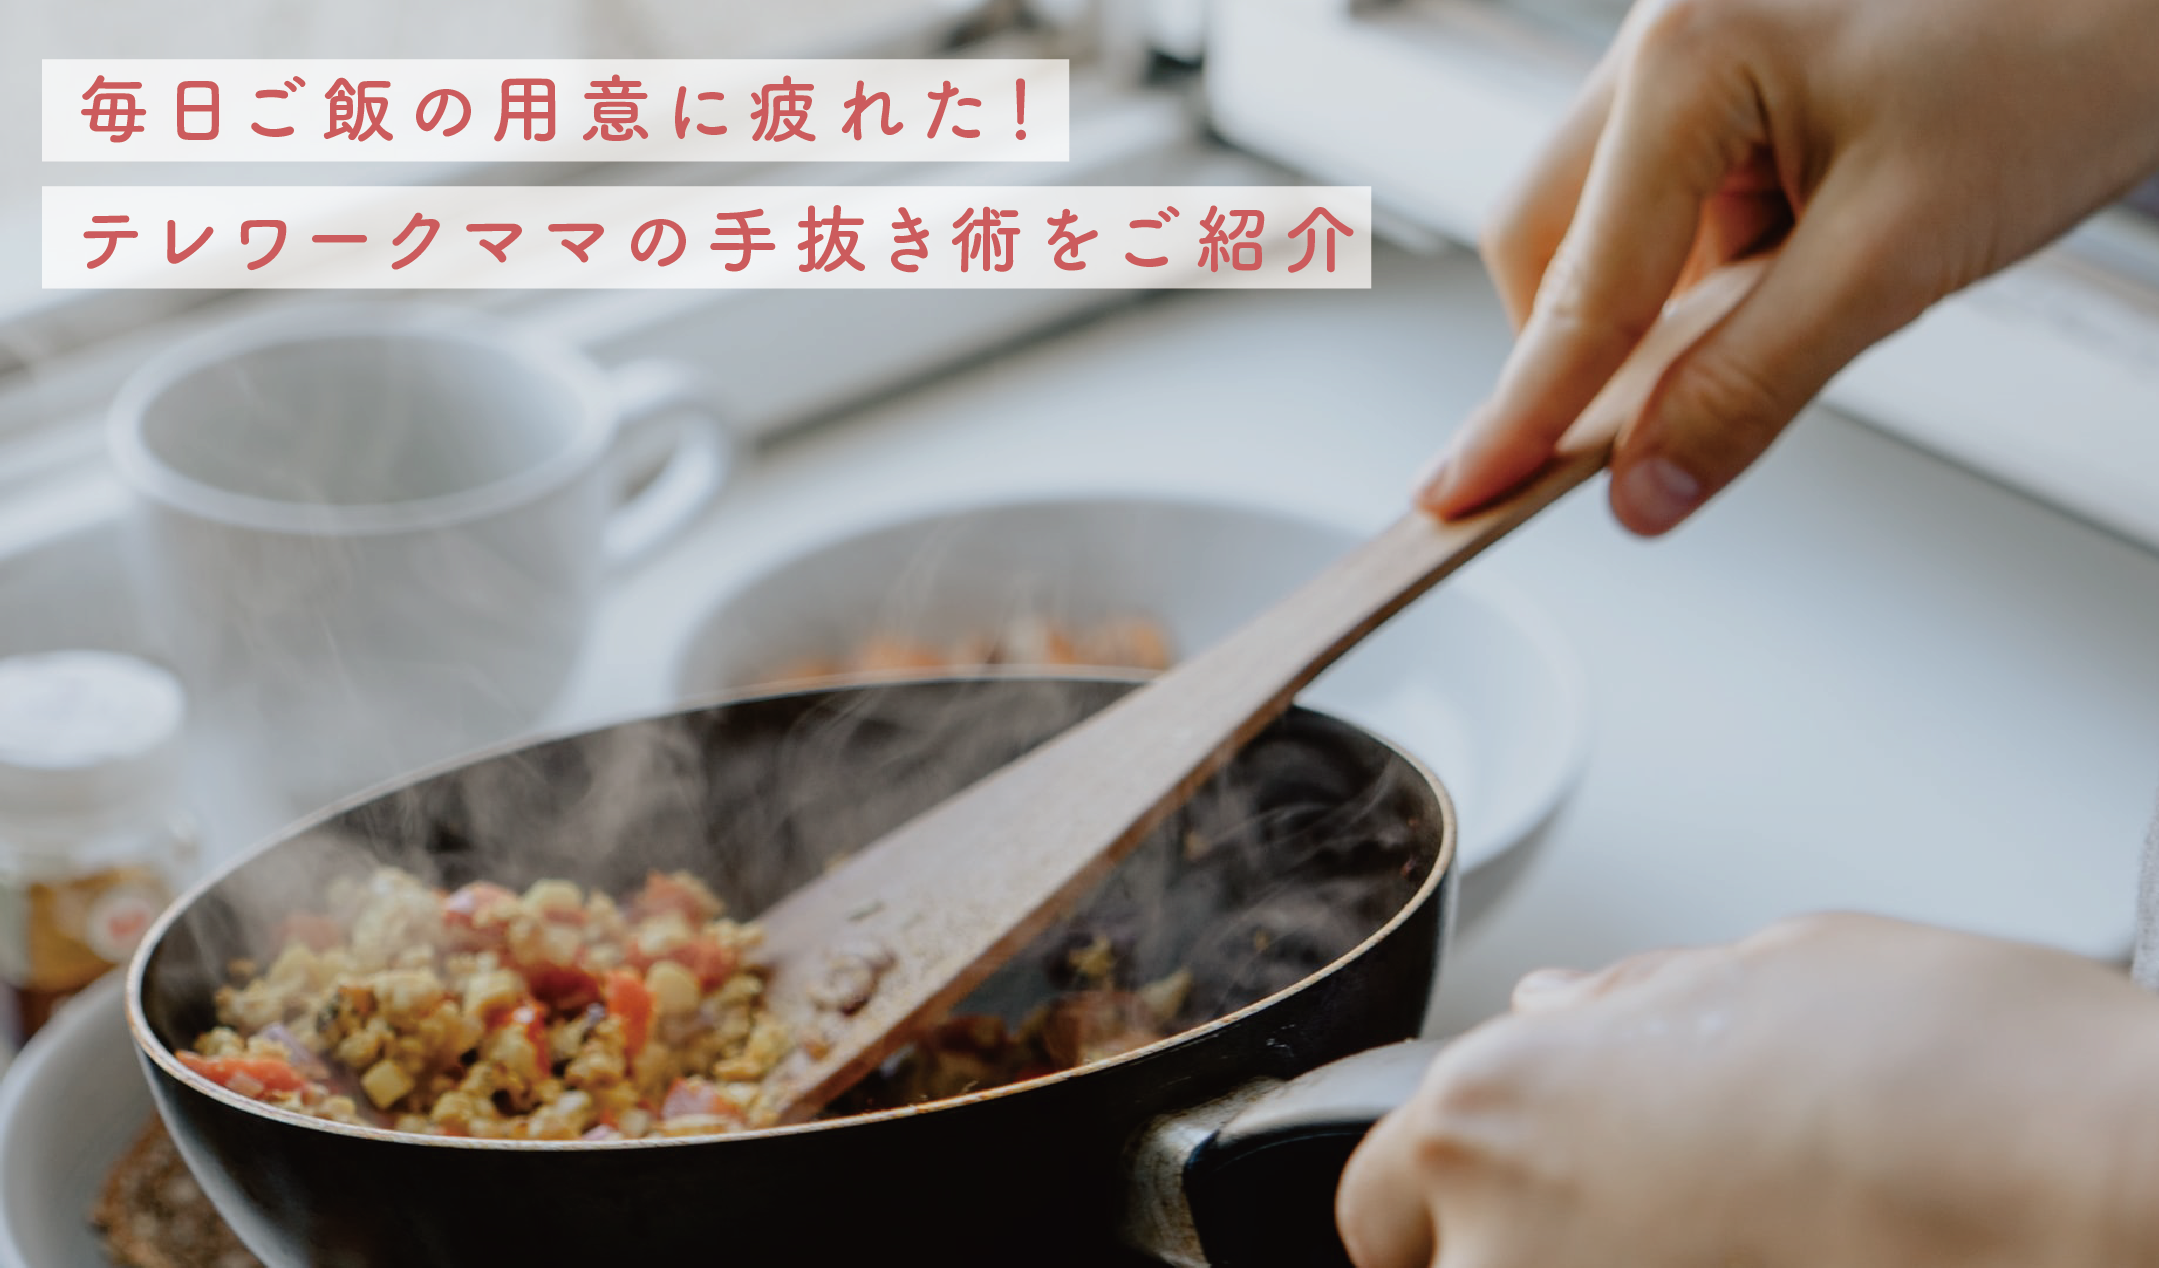 毎日ご飯の用意に疲れた テレワークママの手抜き術をご紹介 ホームページ制作 東大阪 デジタルクリエーション